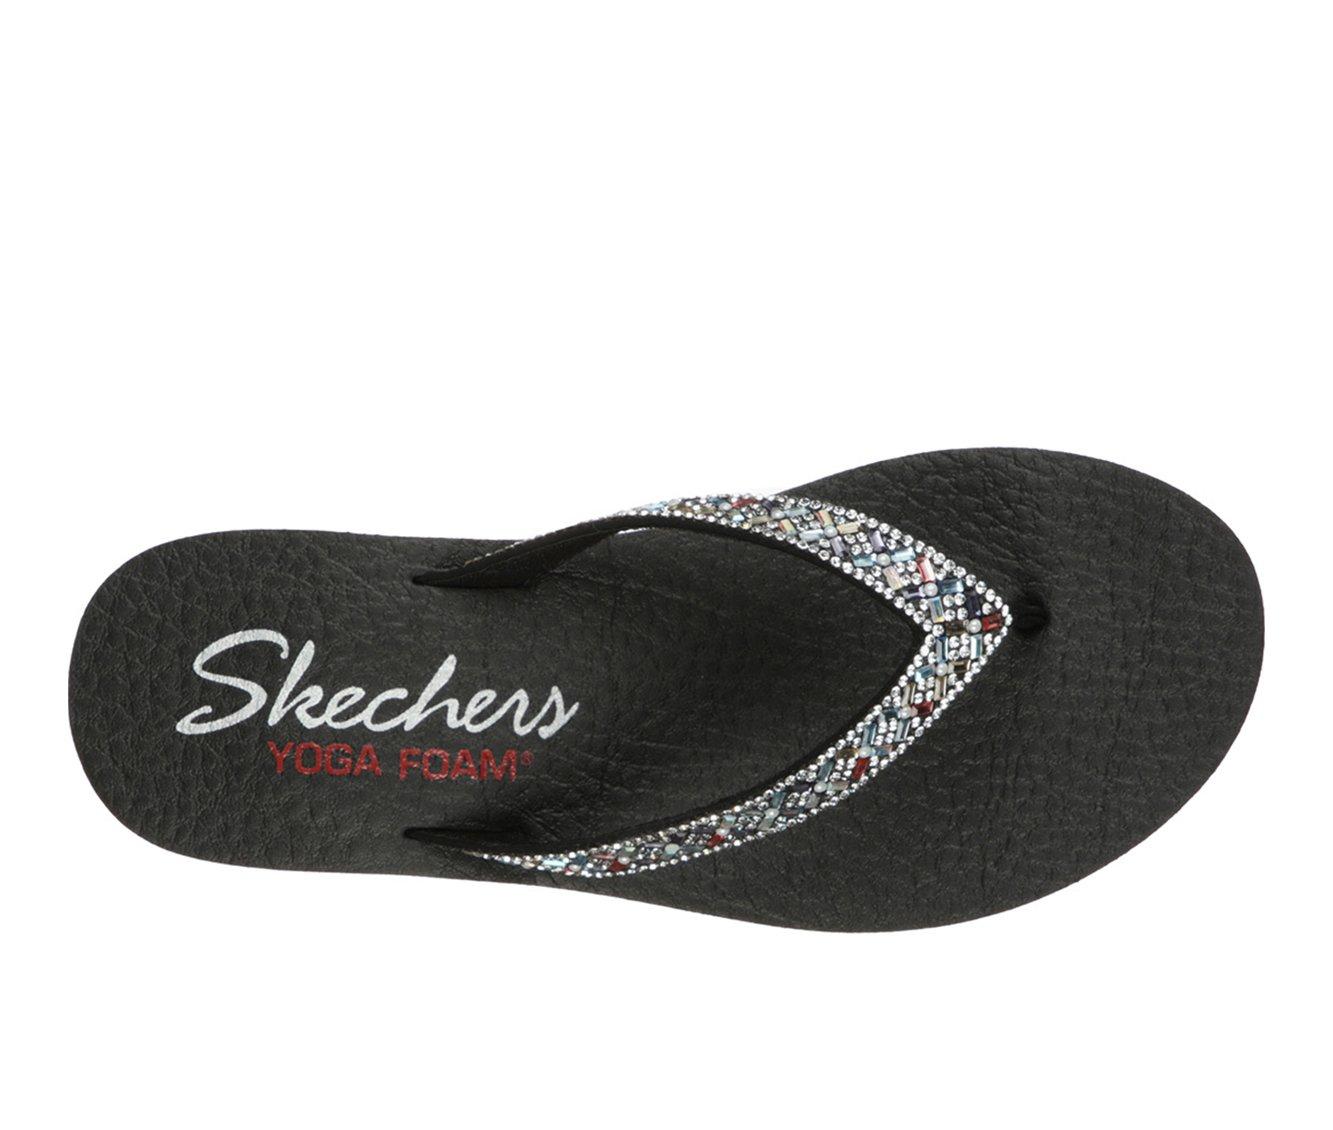 Skechers Meditation Daisy Delight Flip Flop Sandal (Women's